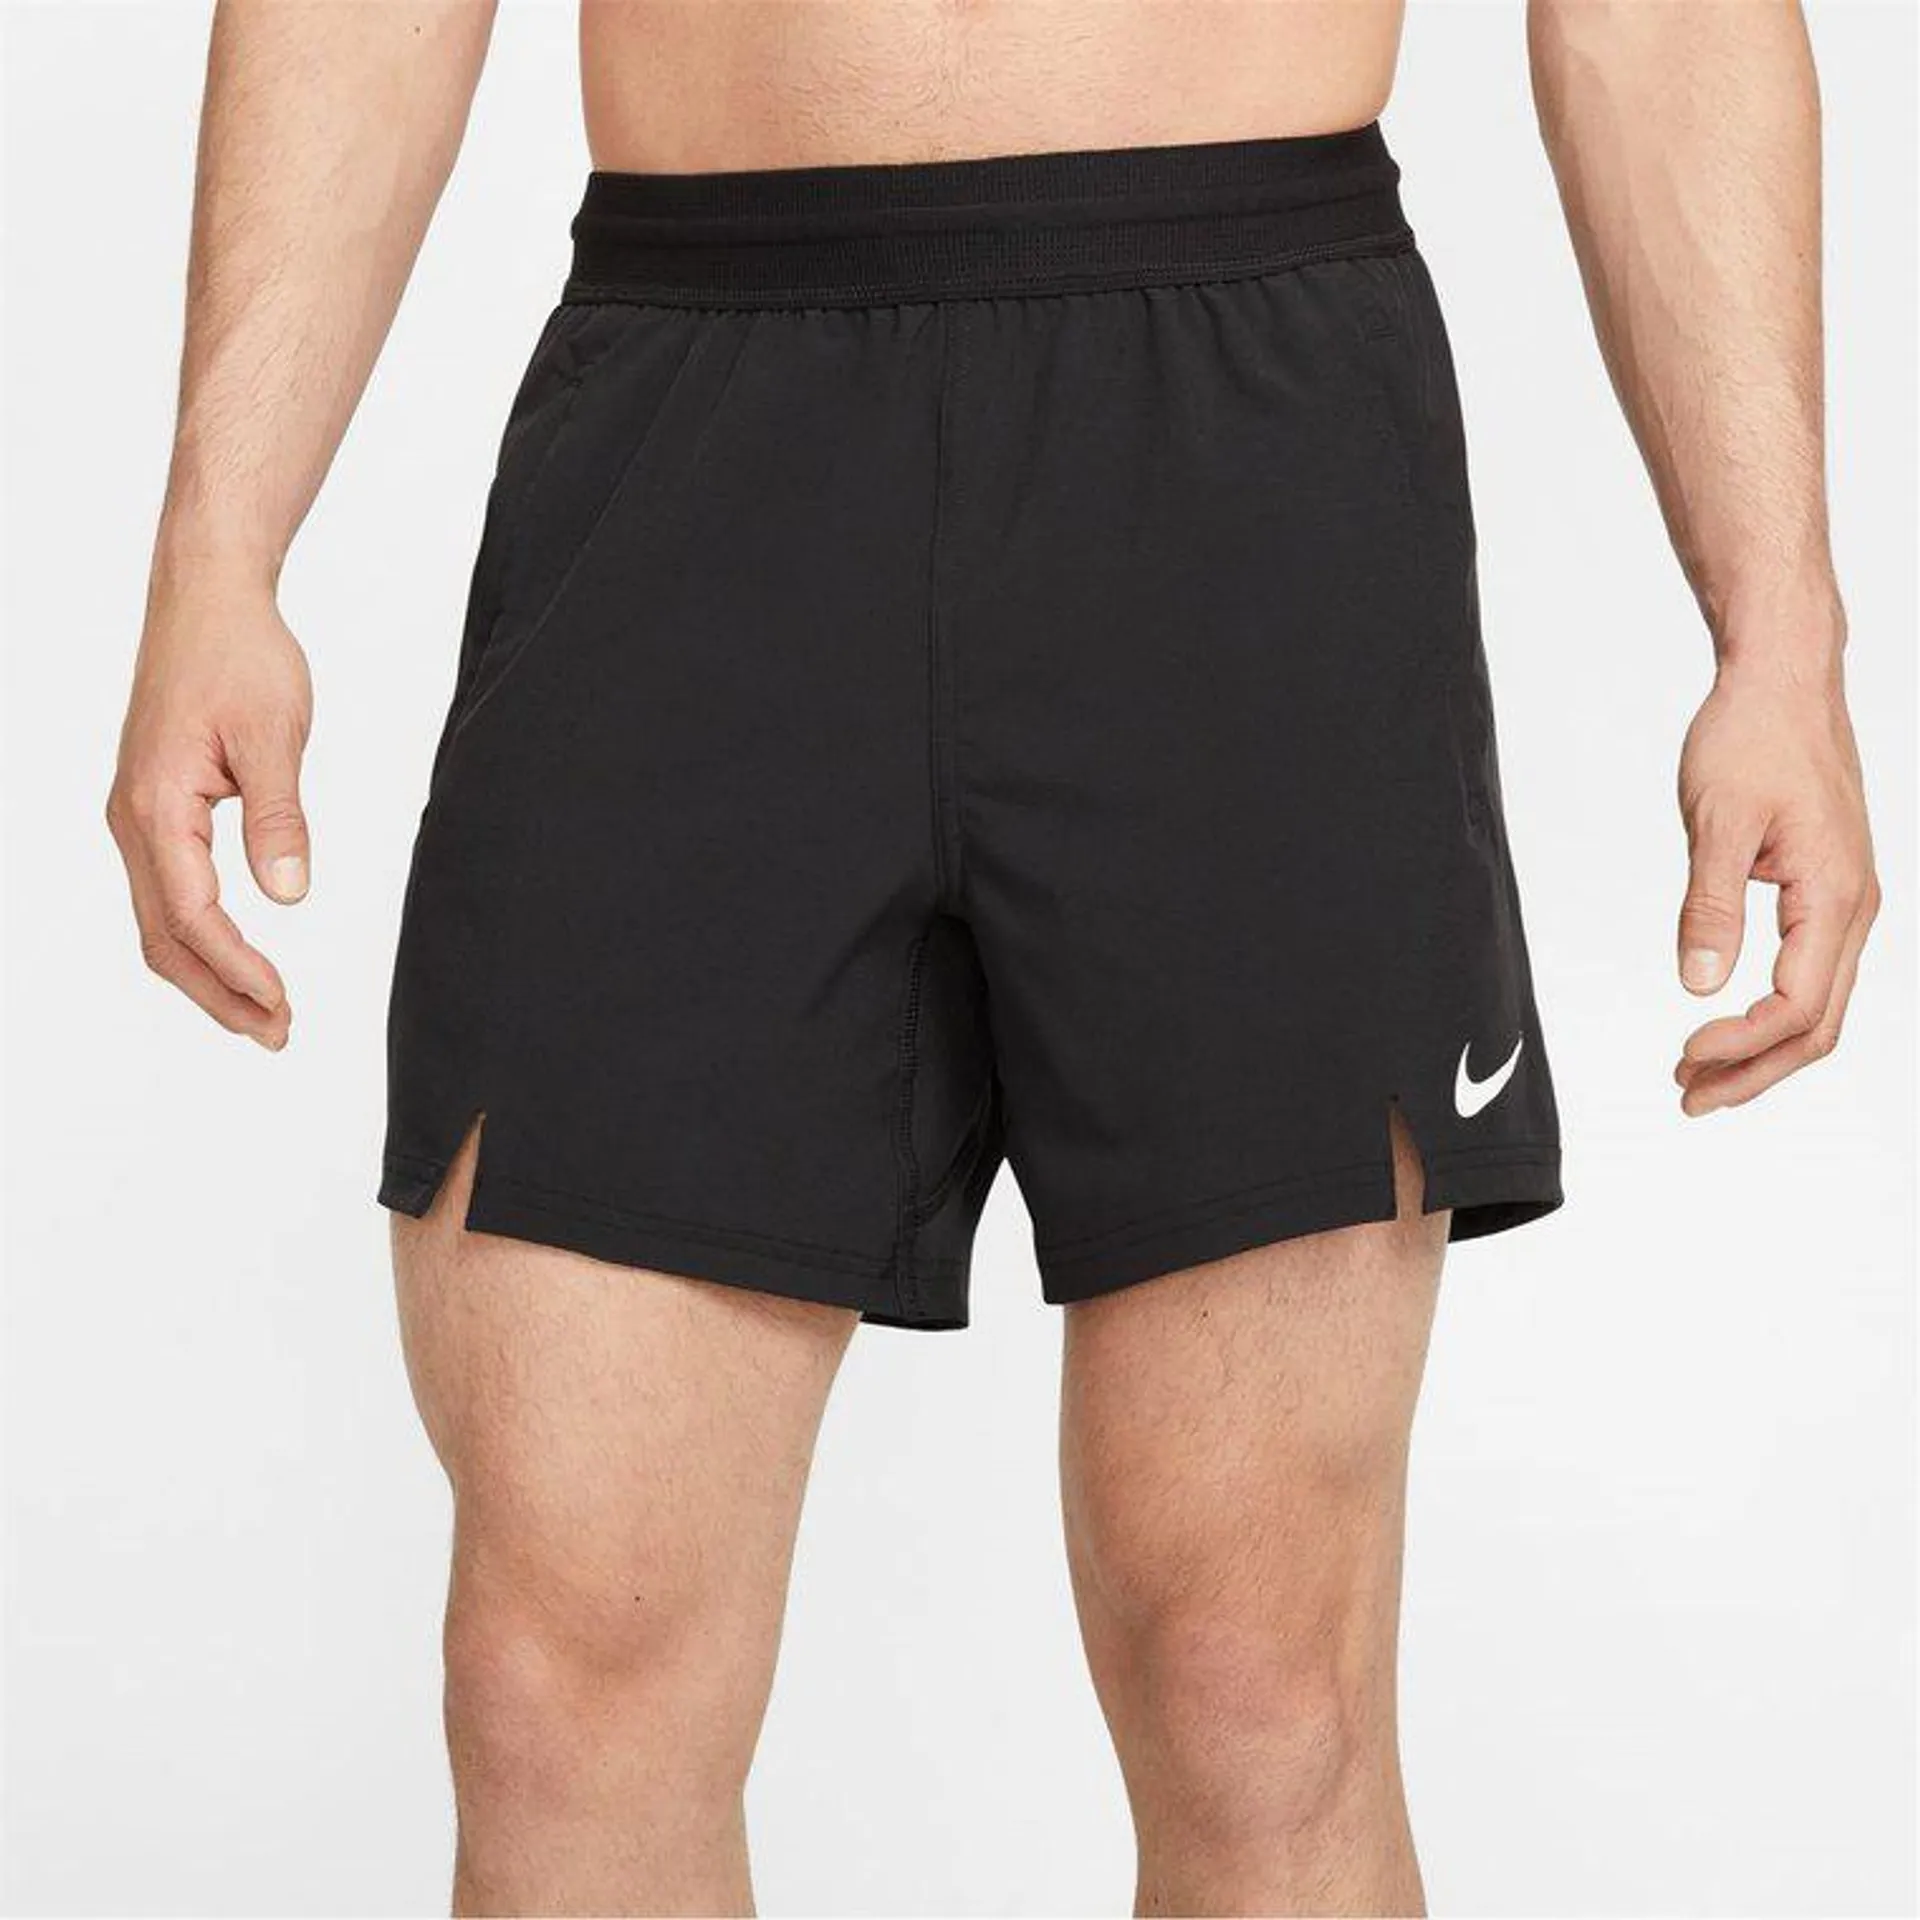 Nike Dri-Fit Flex Short